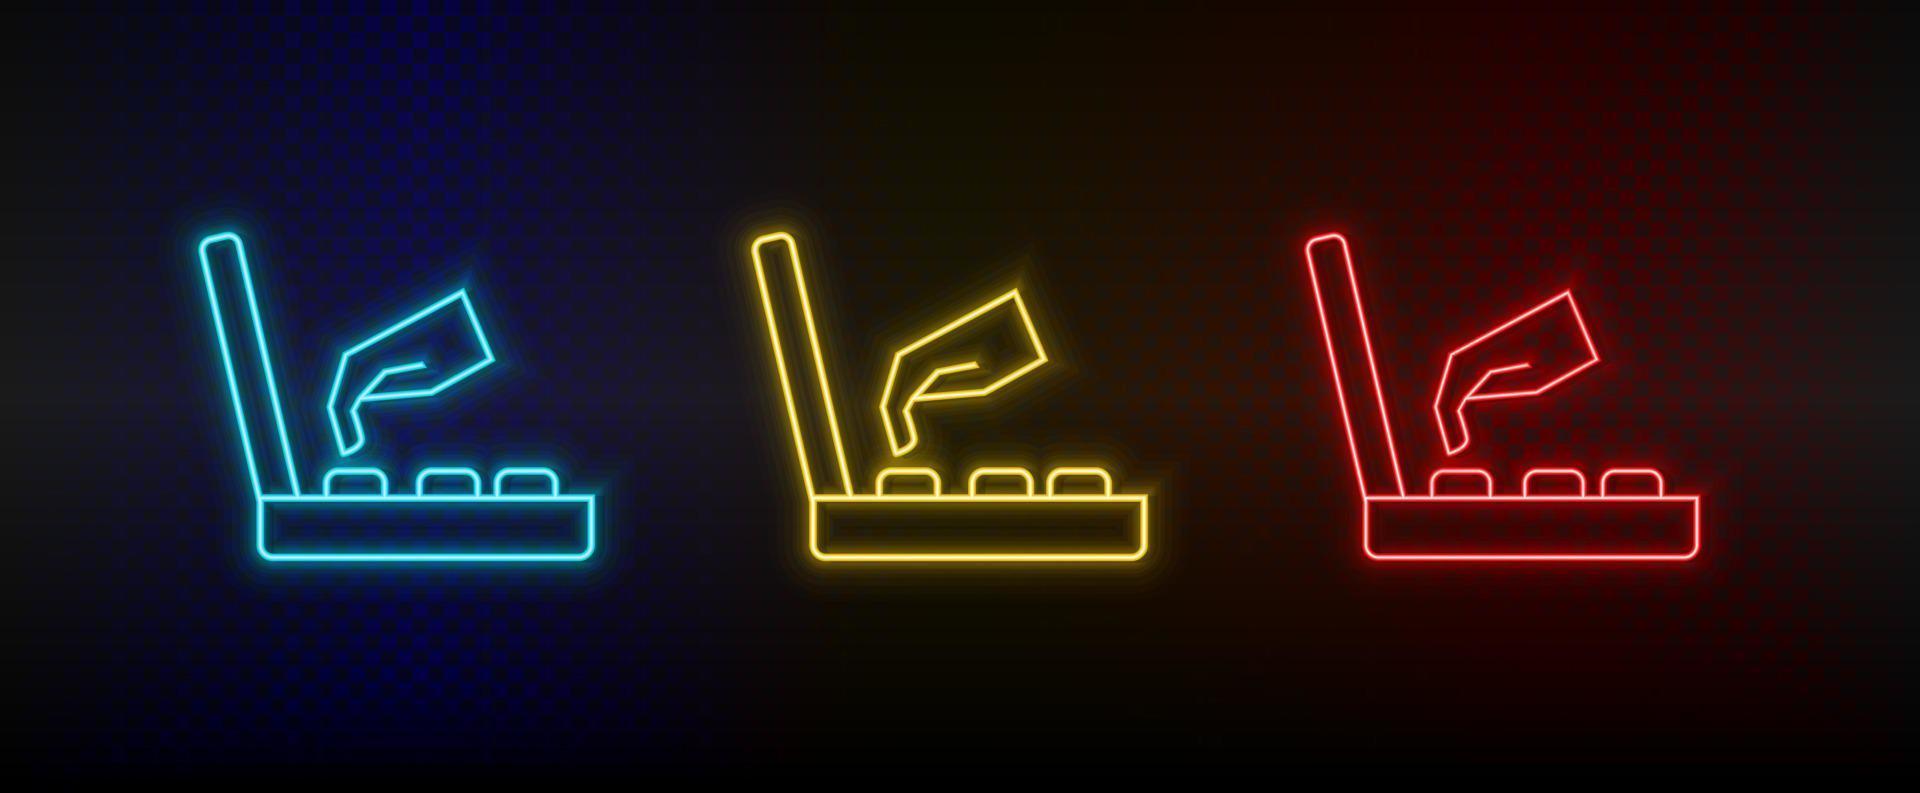 Neon-Symbole. Spiel Retro-Konsole Arcade-Hand. Satz von roten, blauen, gelben Neonvektorsymbolen auf dunklem Hintergrund vektor